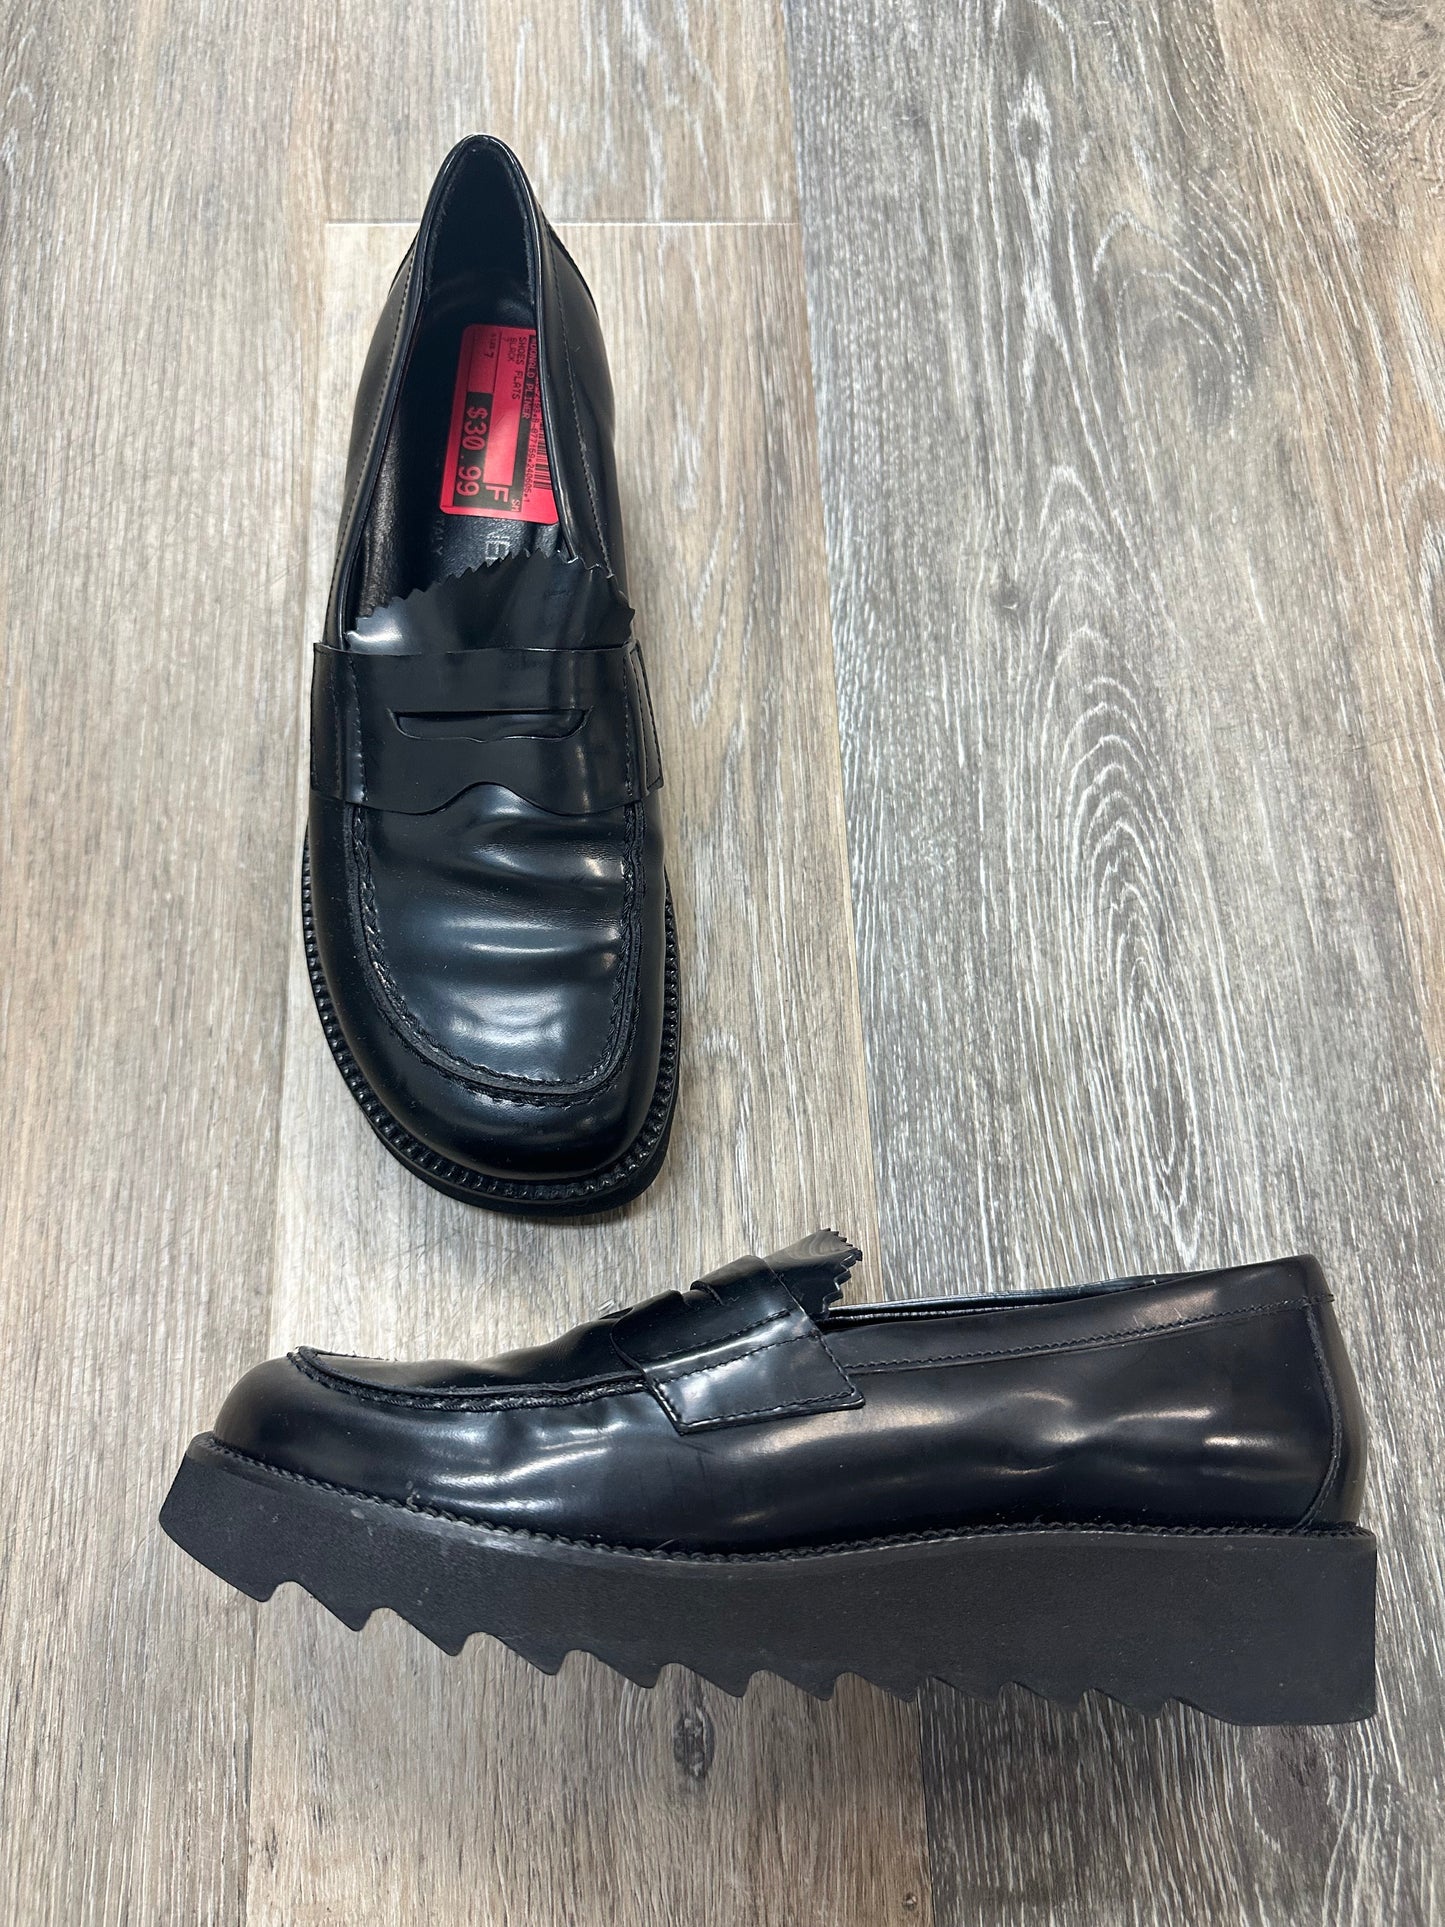 Black Shoes Flats Donald Pliner, Size 7